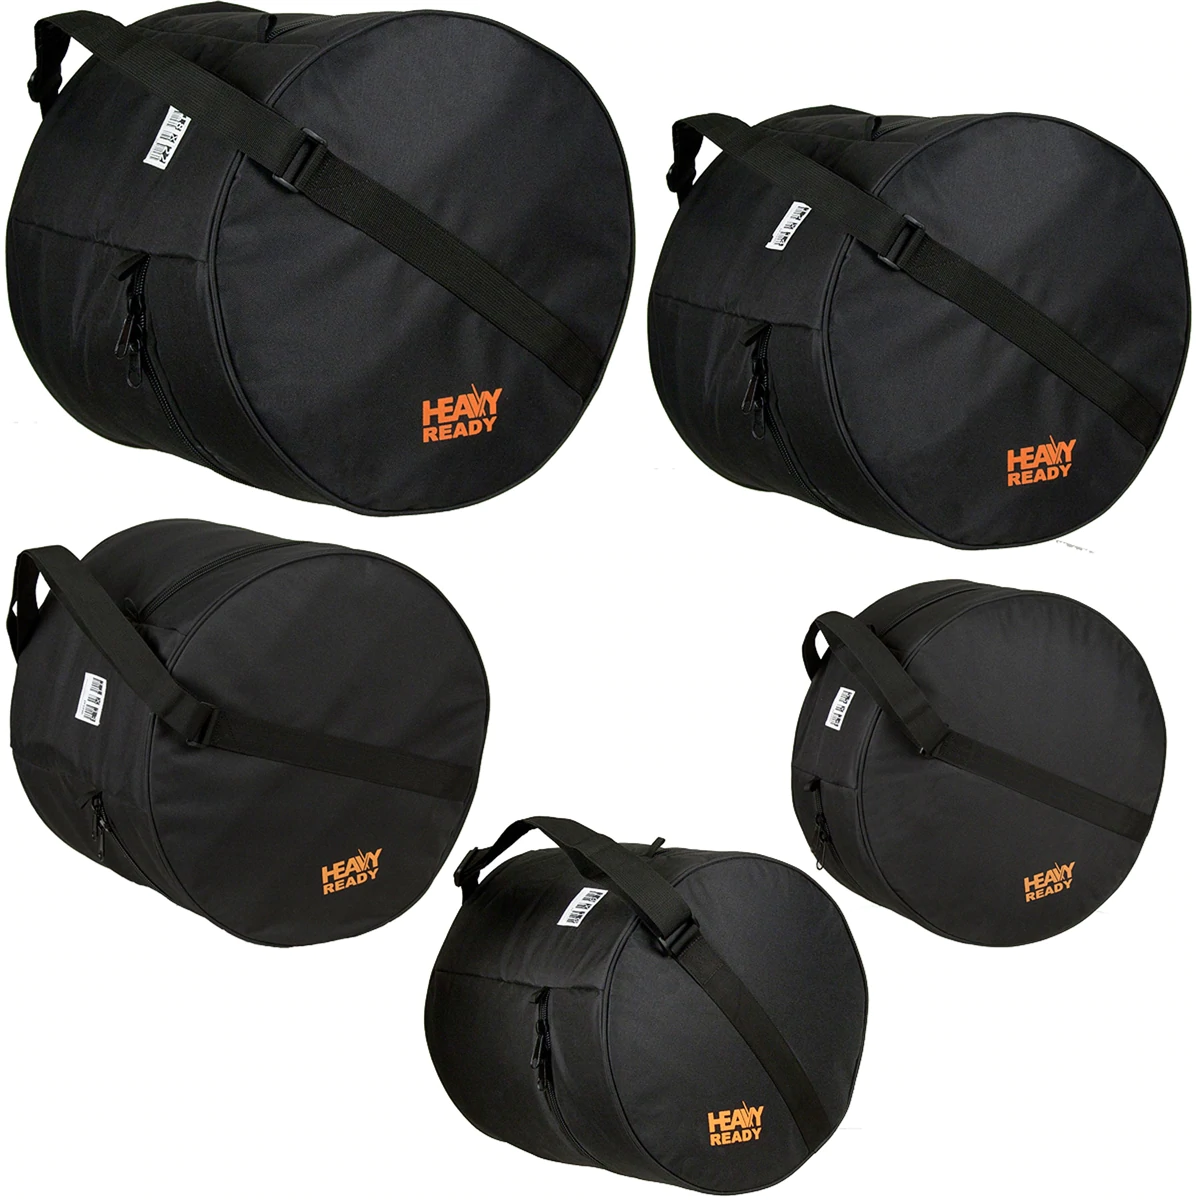 PROTEC Heavy Ready 5pc Bag Kit - Fusion 1